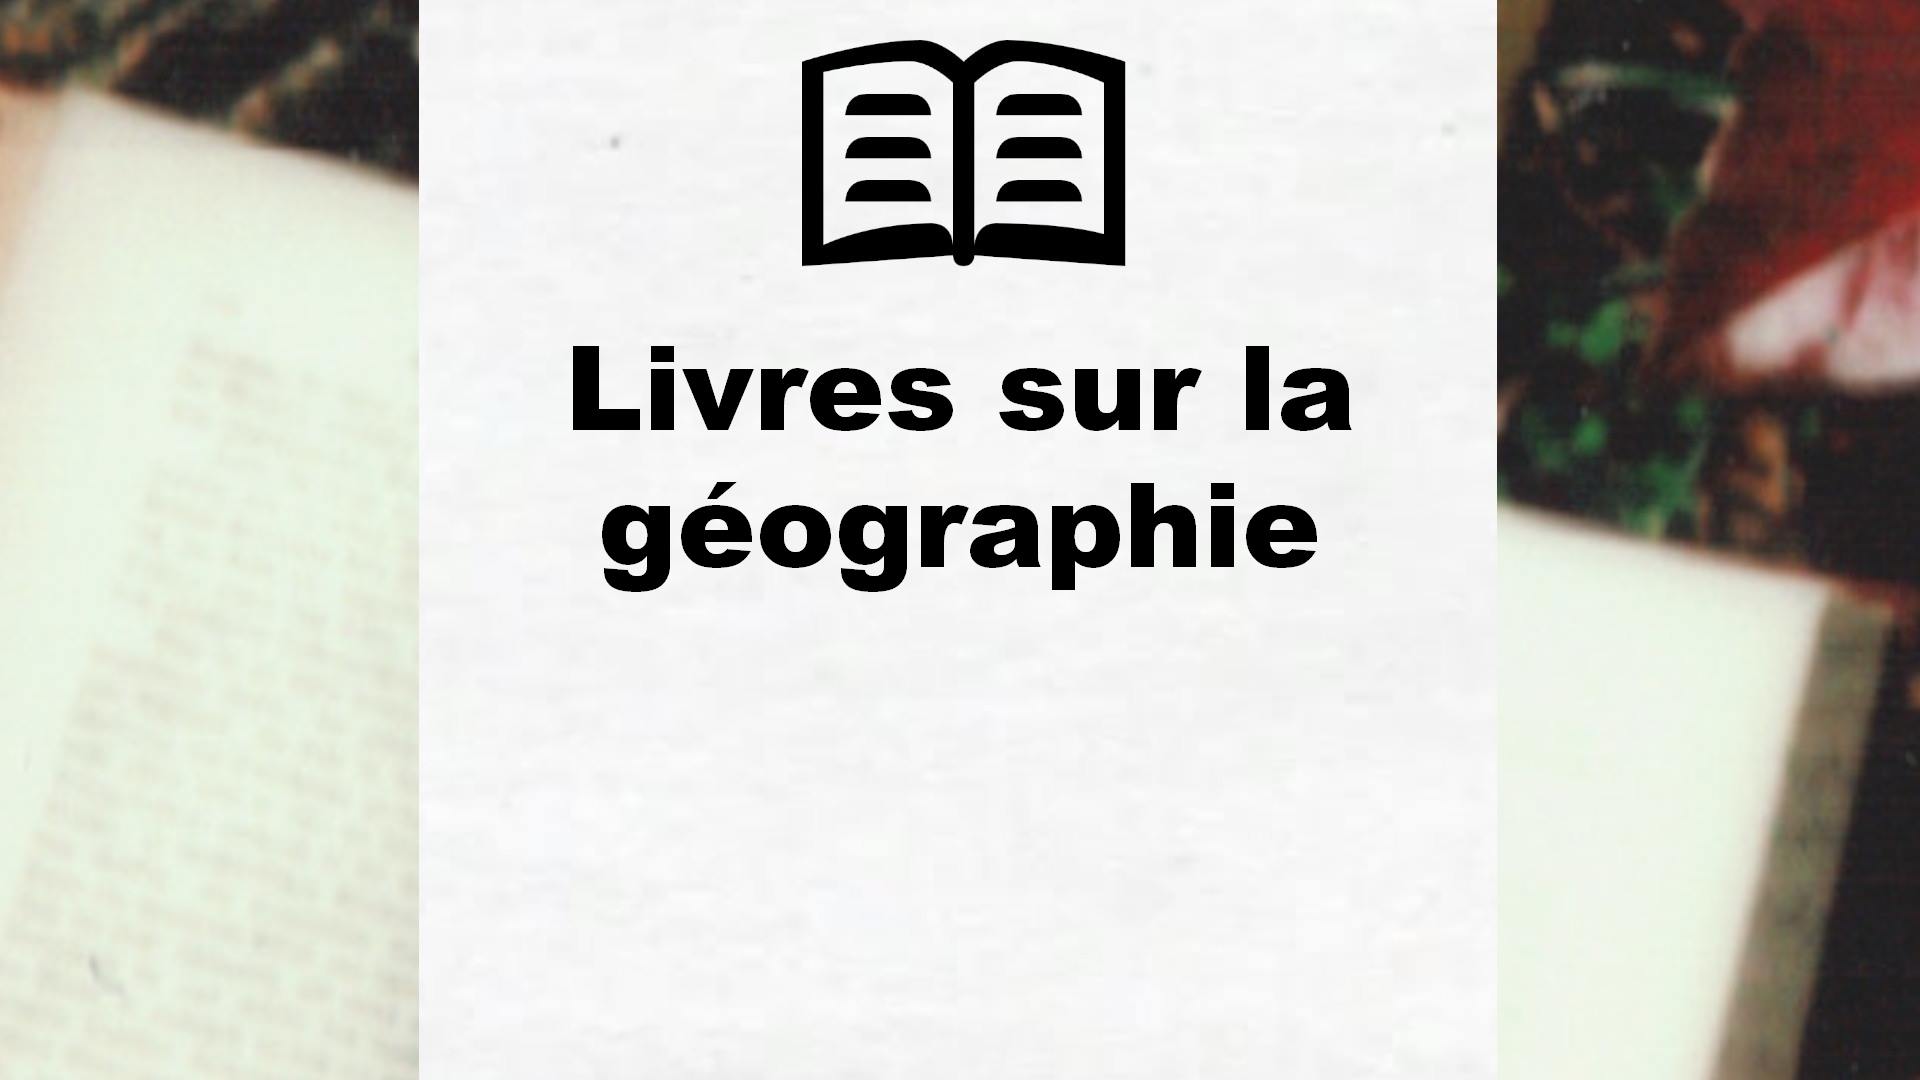 Livres sur la géographie